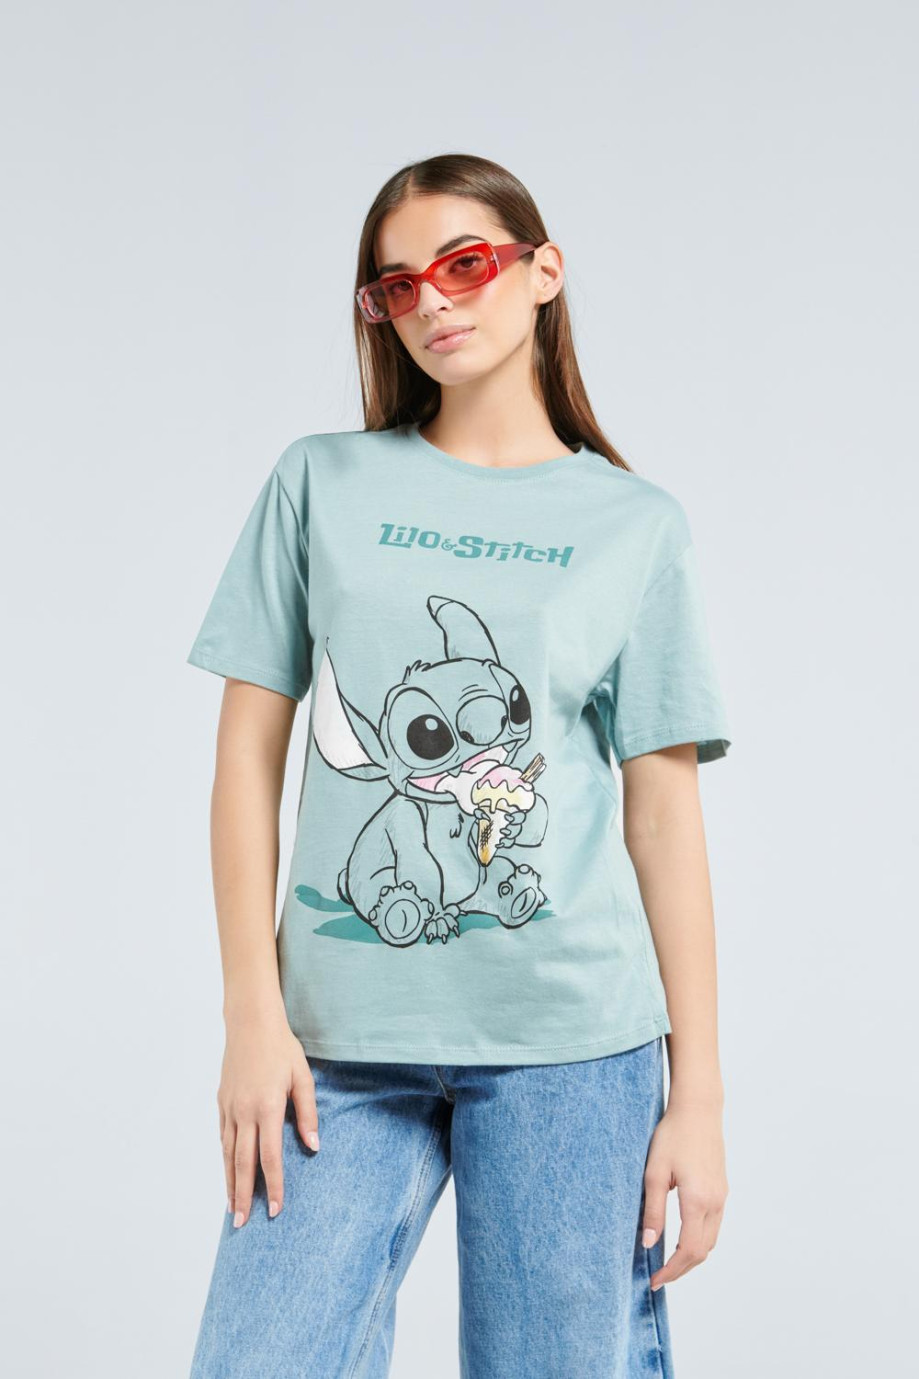 Camiseta verde clara con manga corta y estampado de Lilo & Stitch en frente